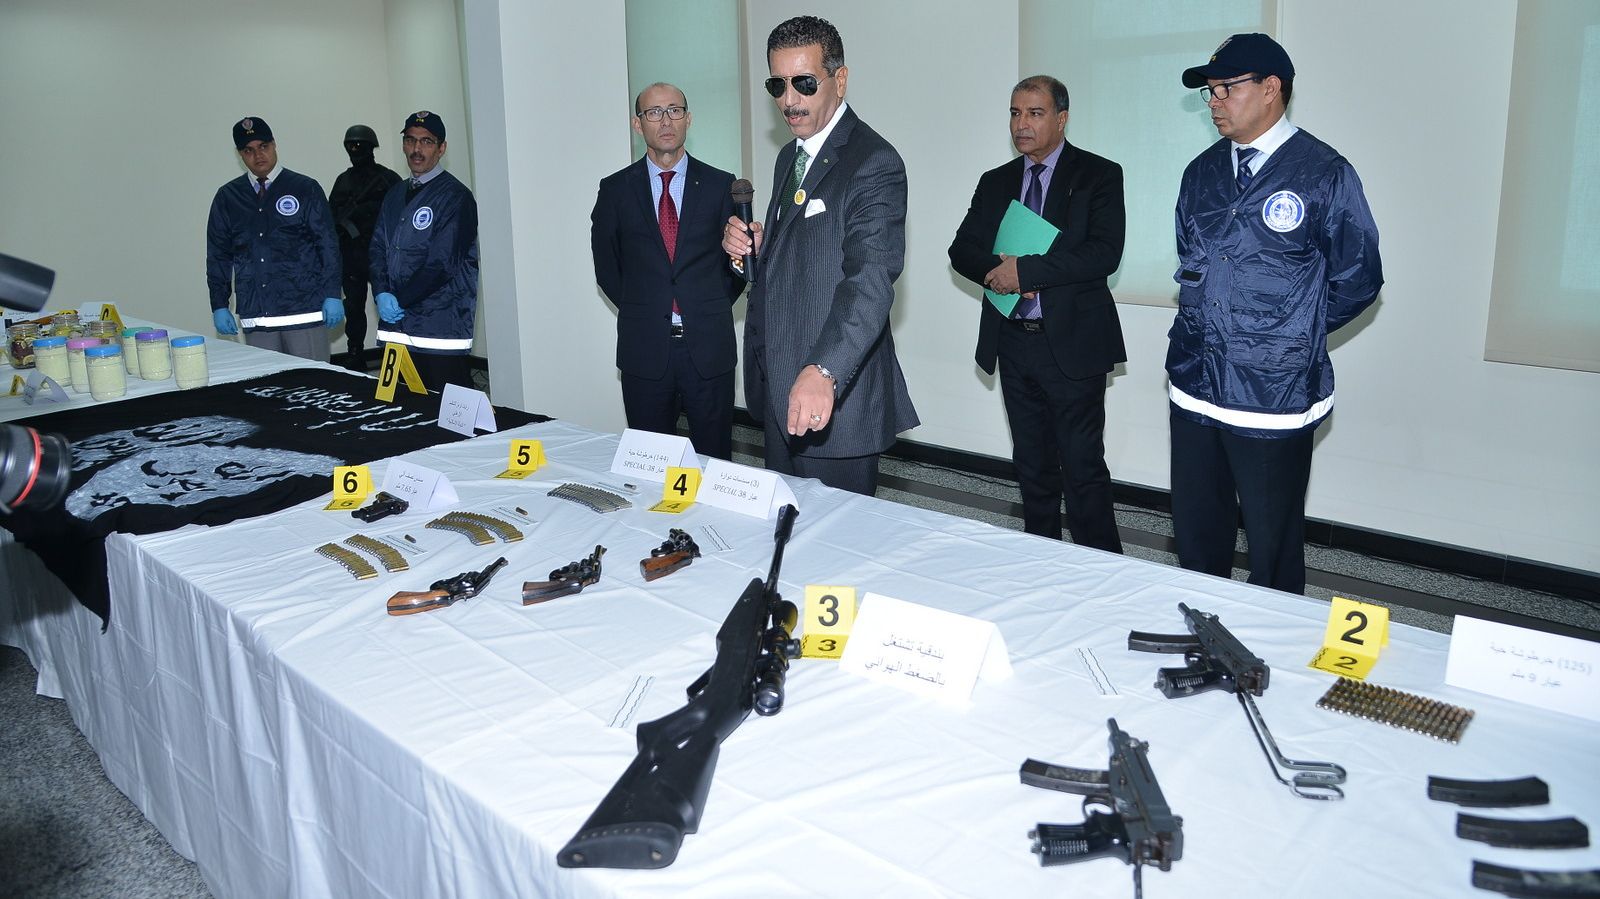 أسلحة من مختلف الاصناف والأحجام، كانت الخلية تنوي استعمالها في هجومات إرهابية بالمغرب.
